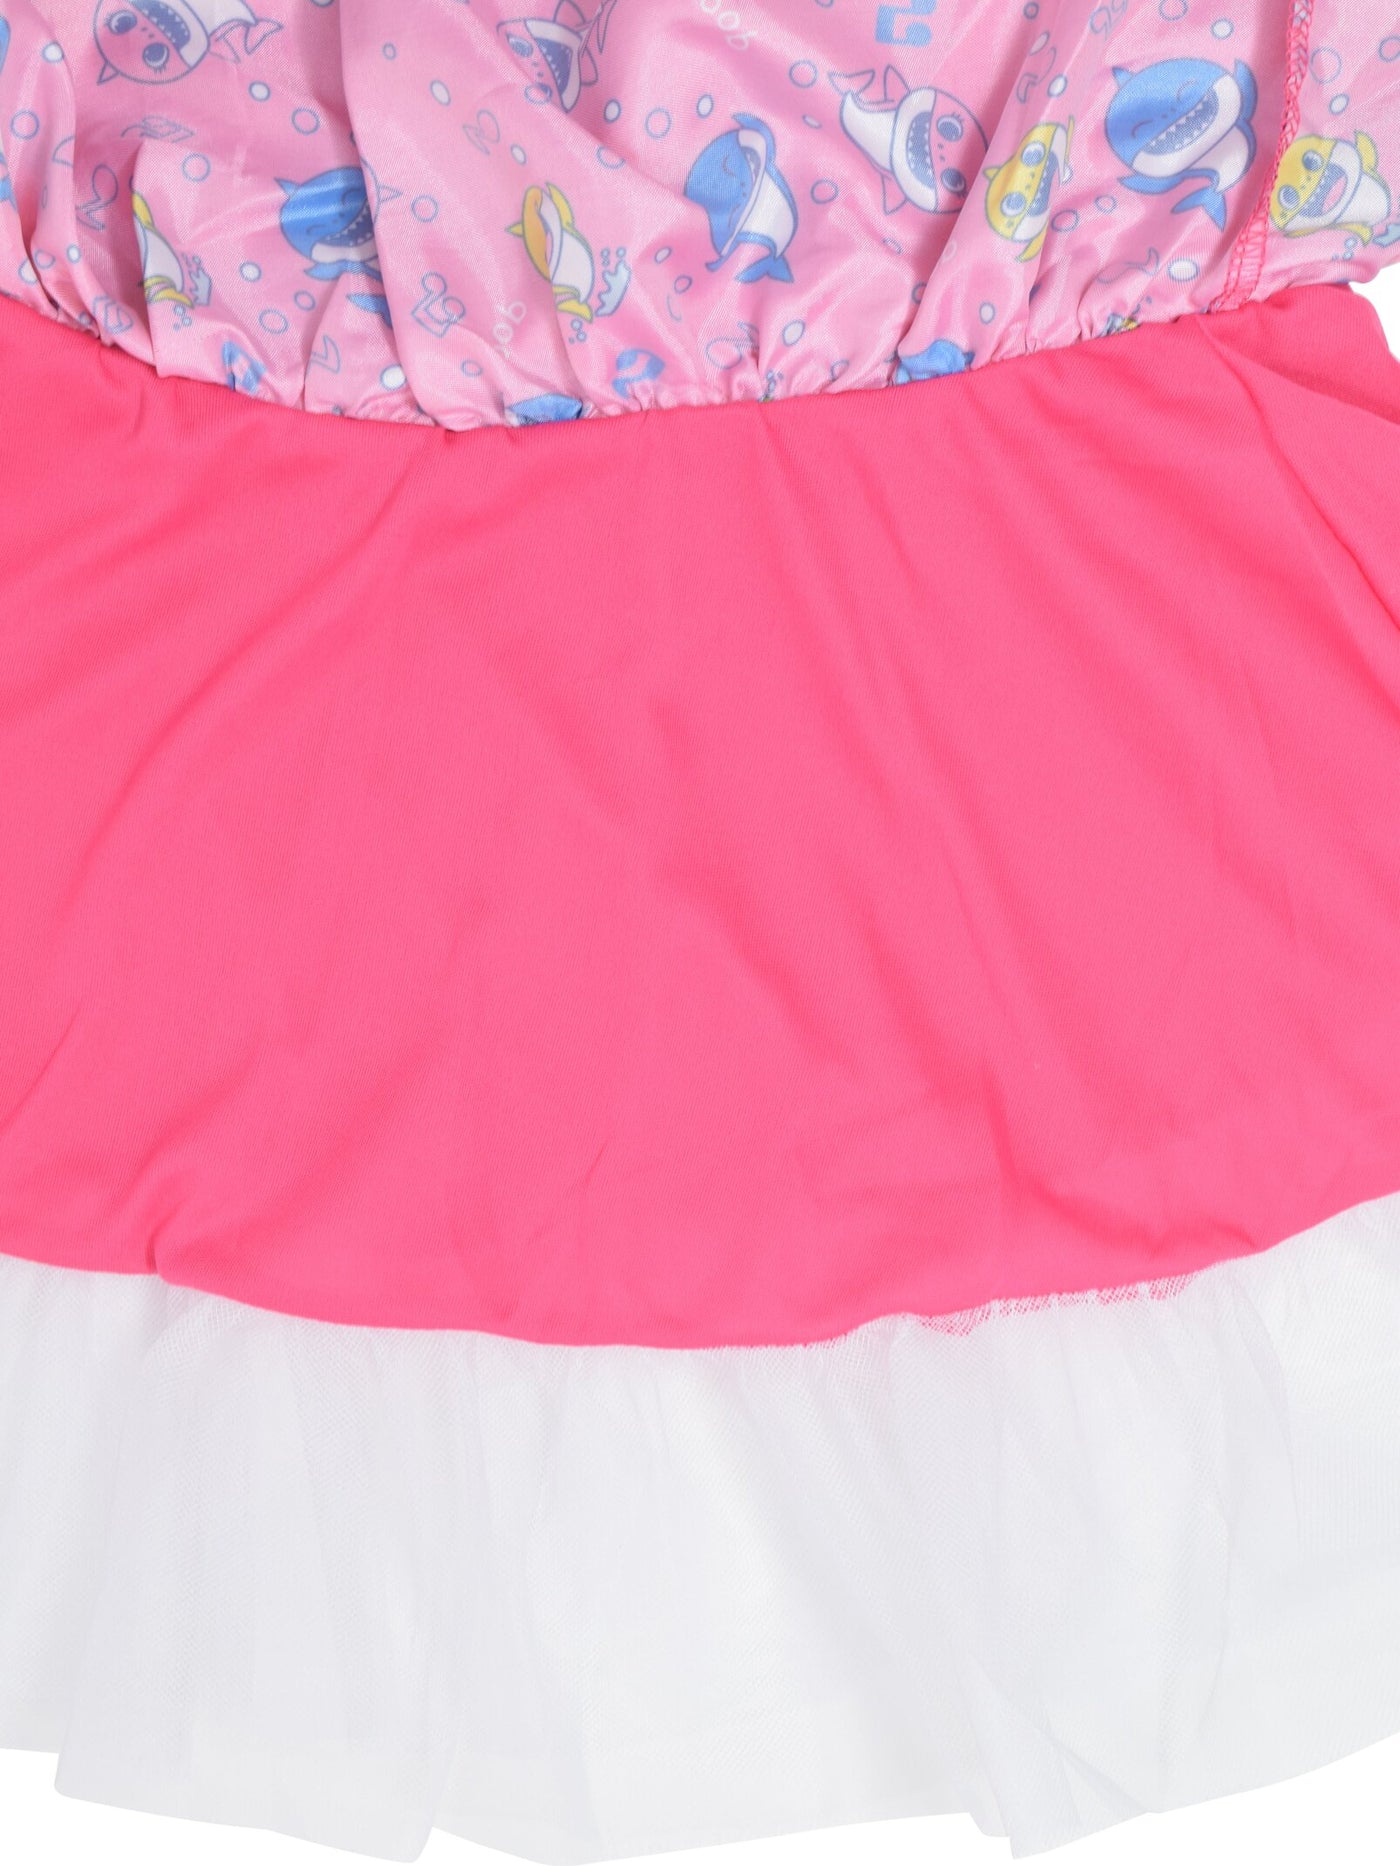 Pinkfong Baby Shark Costume Dress